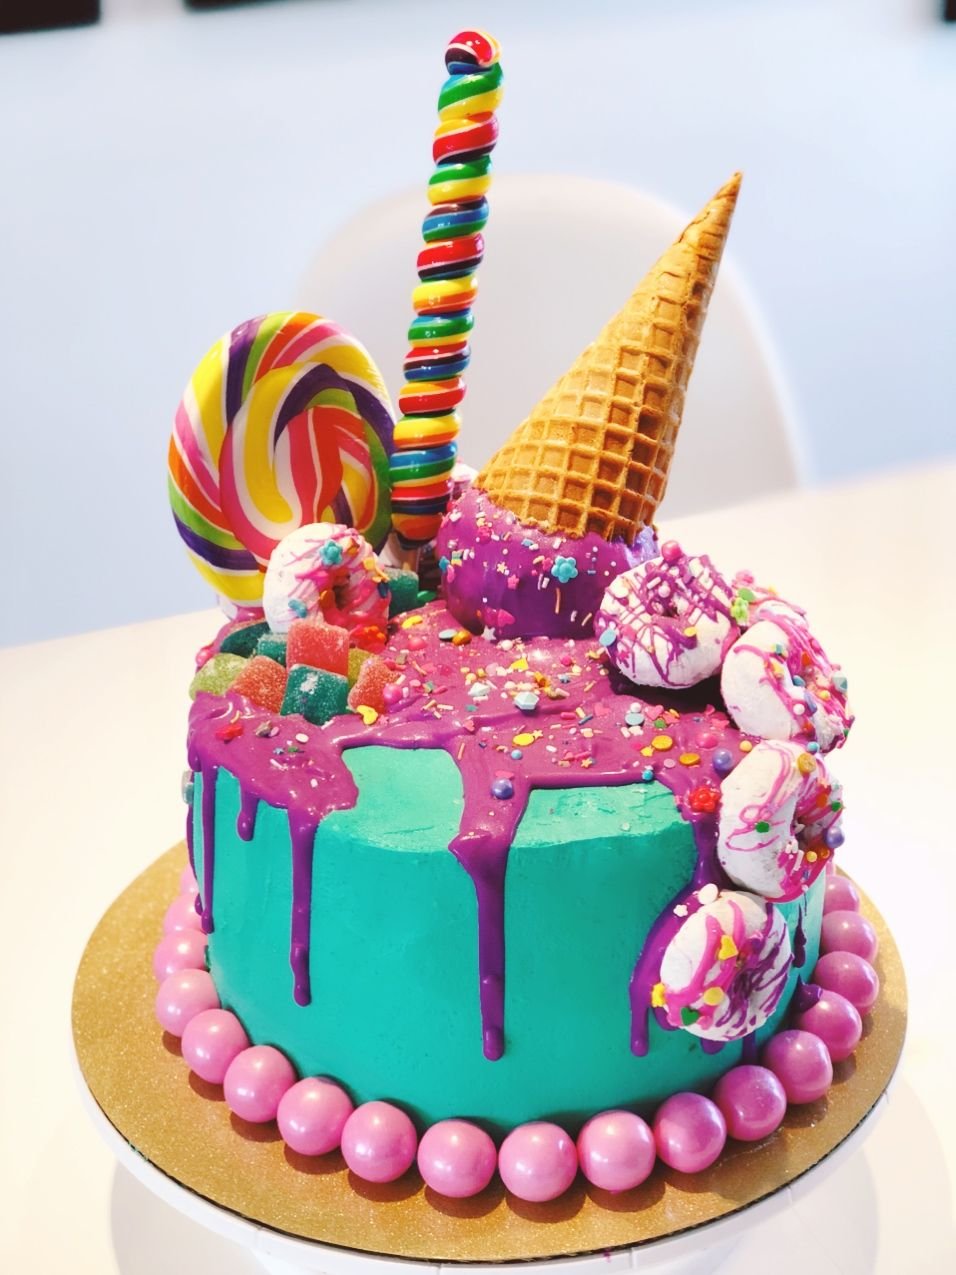 Оформление торта на день рождения девочке. Канди кейк. Украшение торта для девочки. Торт девочка. Торт с днем рождения!.